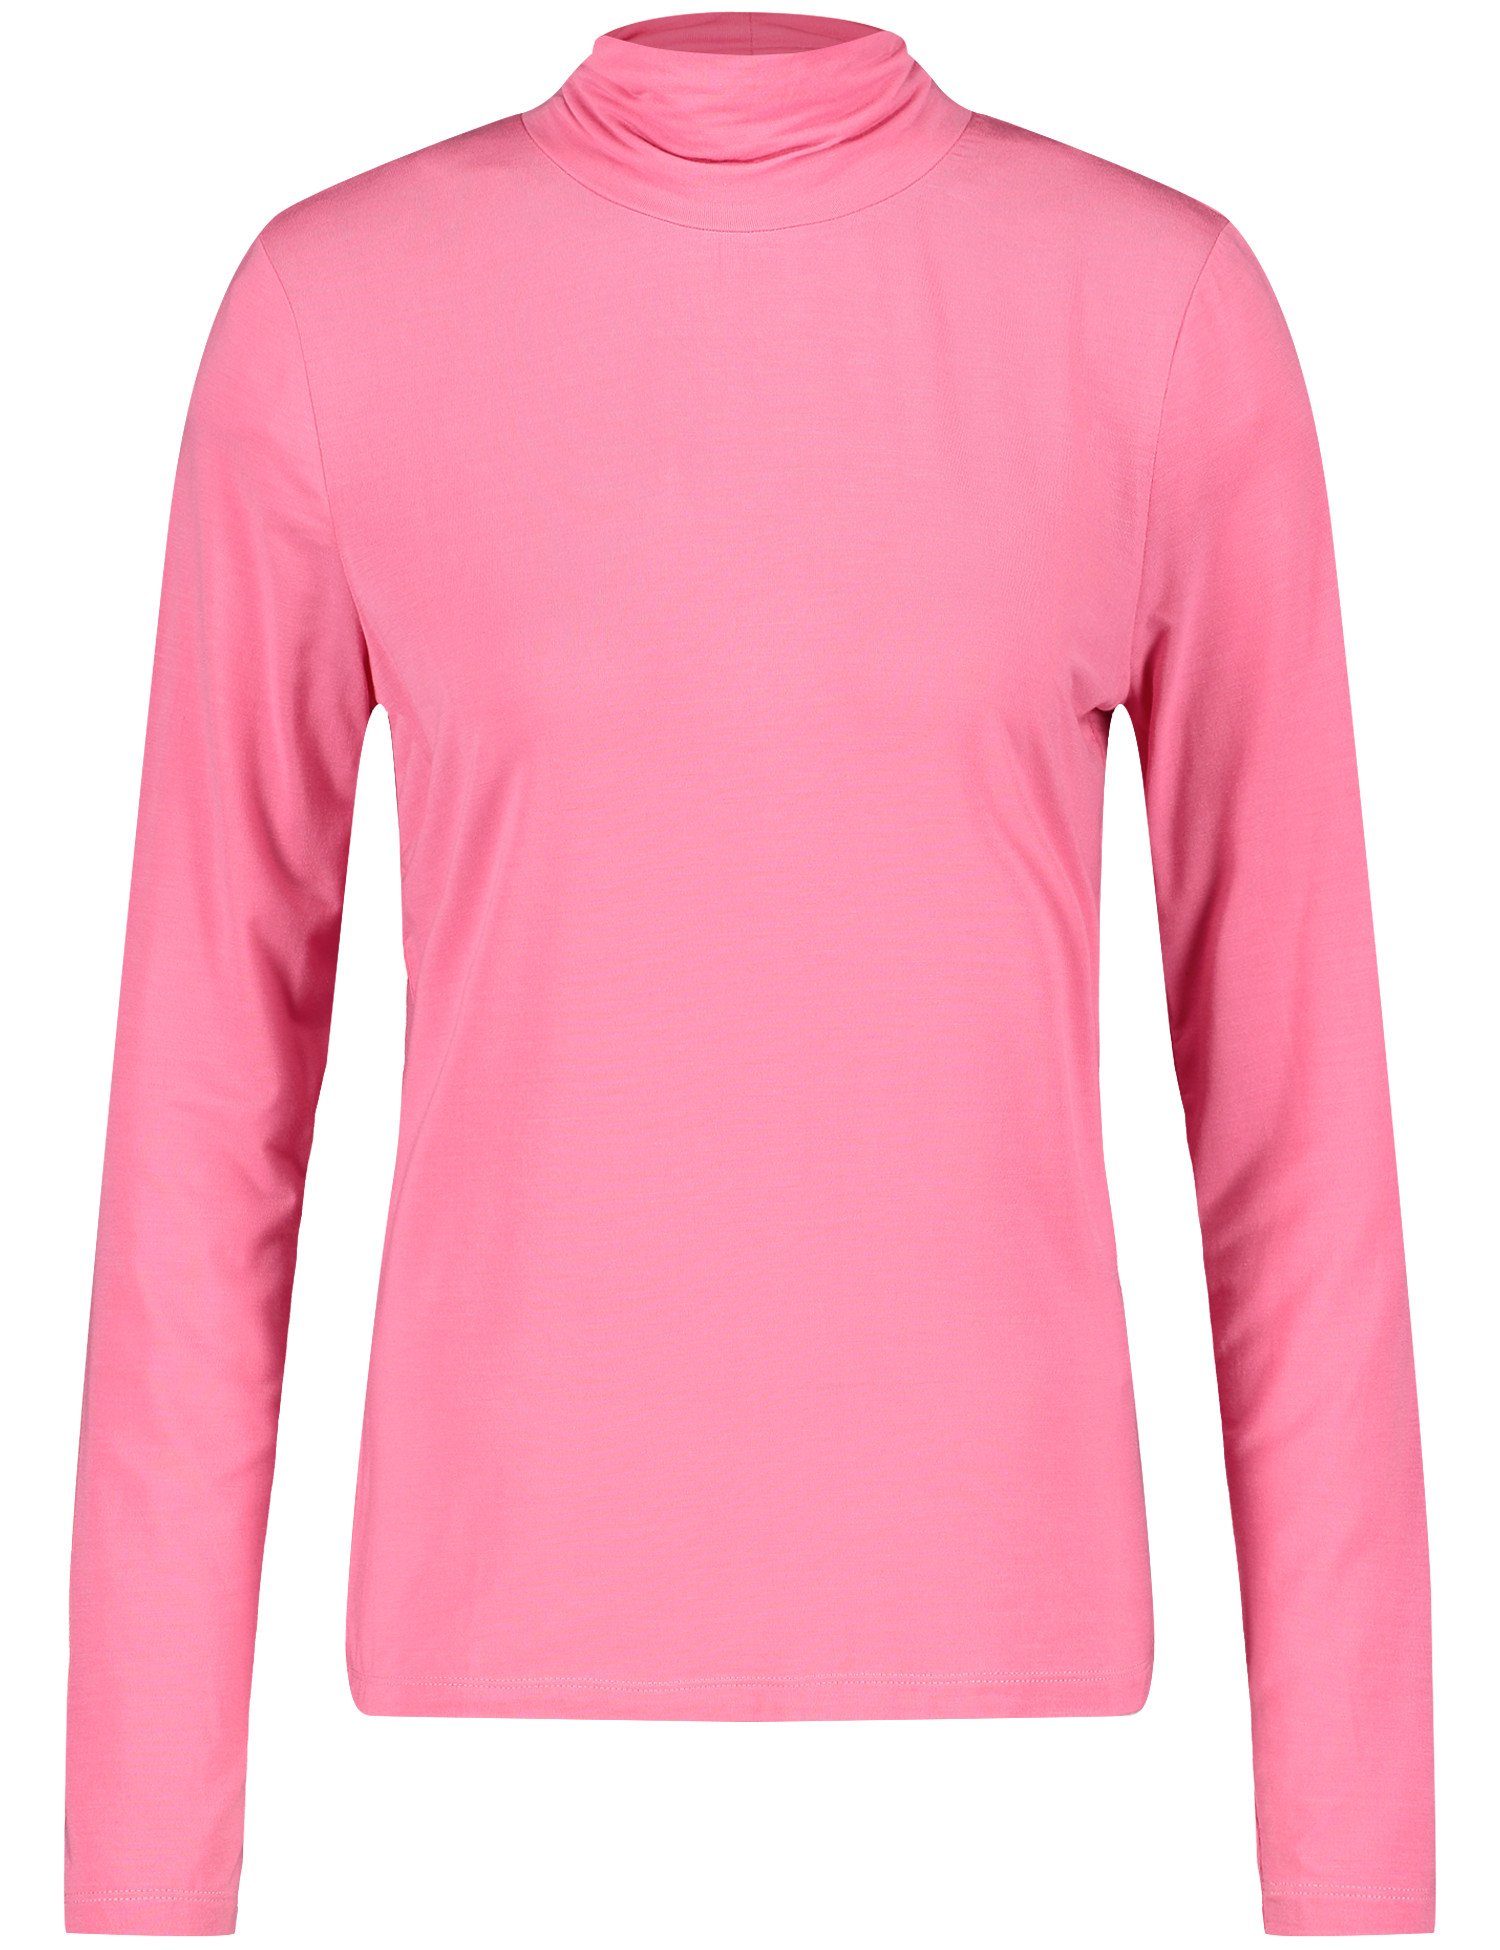 GERRY WEBER T-Shirt 30894 ROSE PINK | 